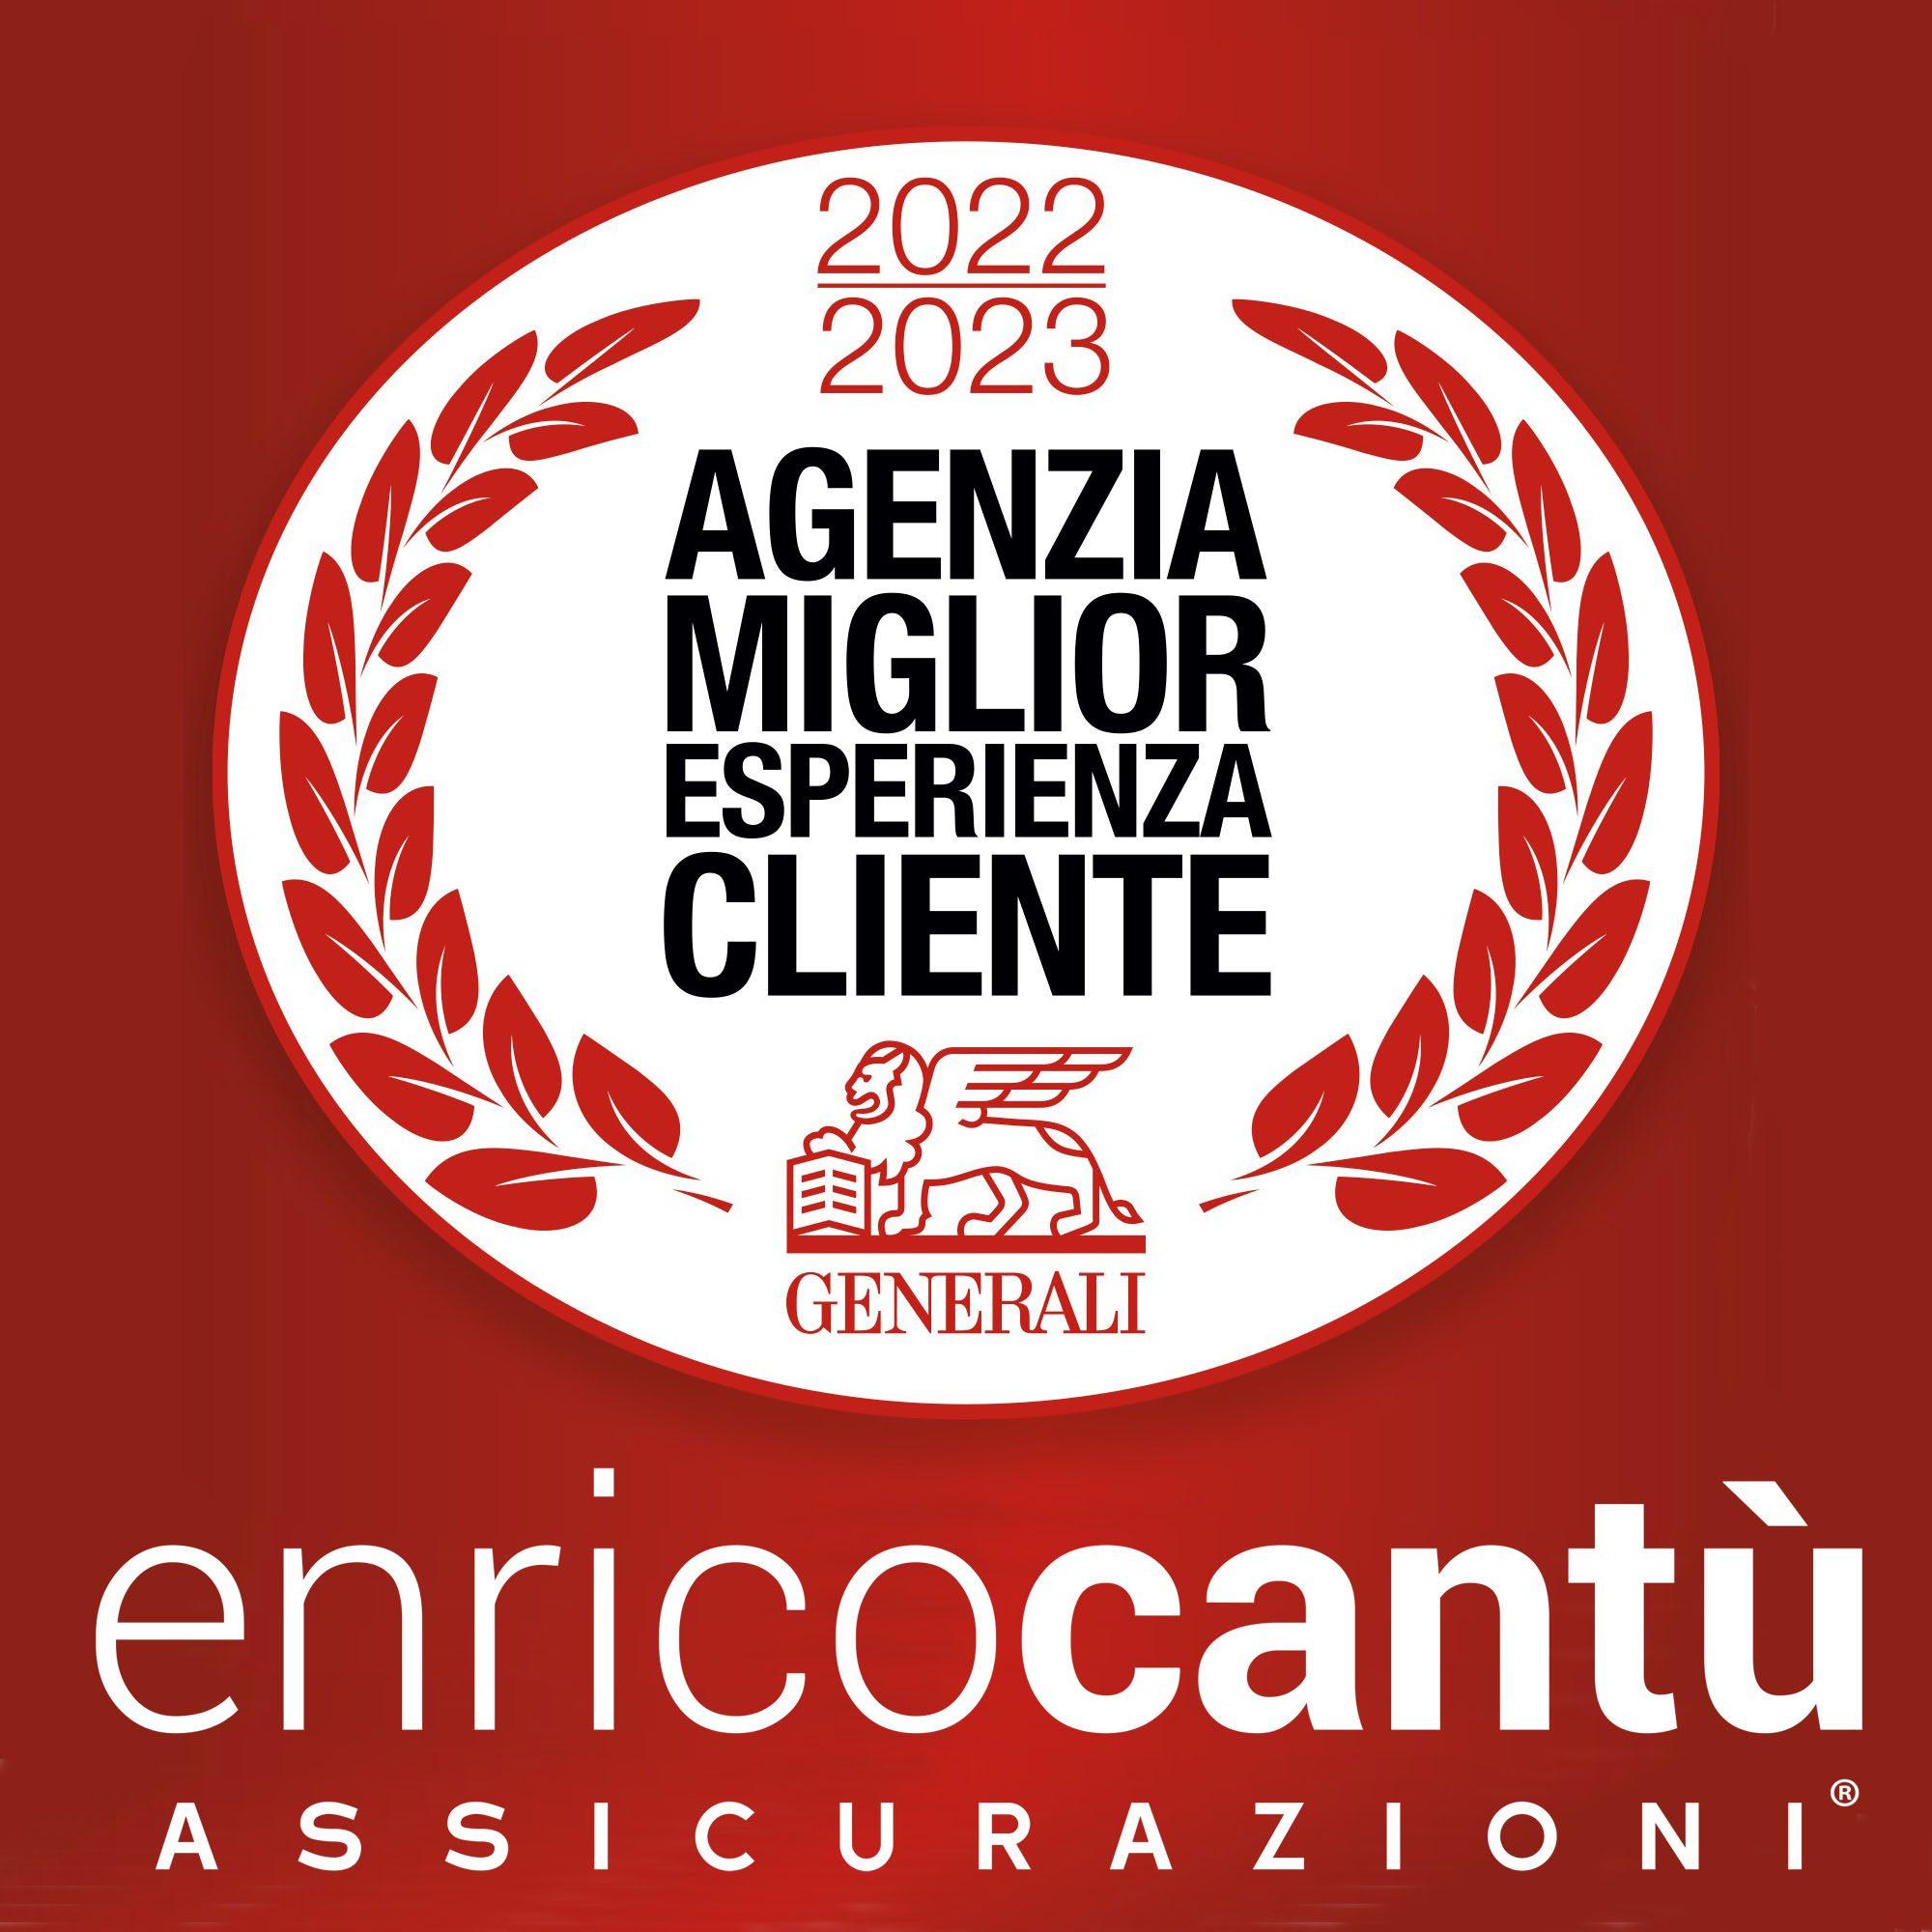 Enrico Cantù Assicurazioni riceve il riconoscimento “Miglior Esperienza Cliente 2022/23”